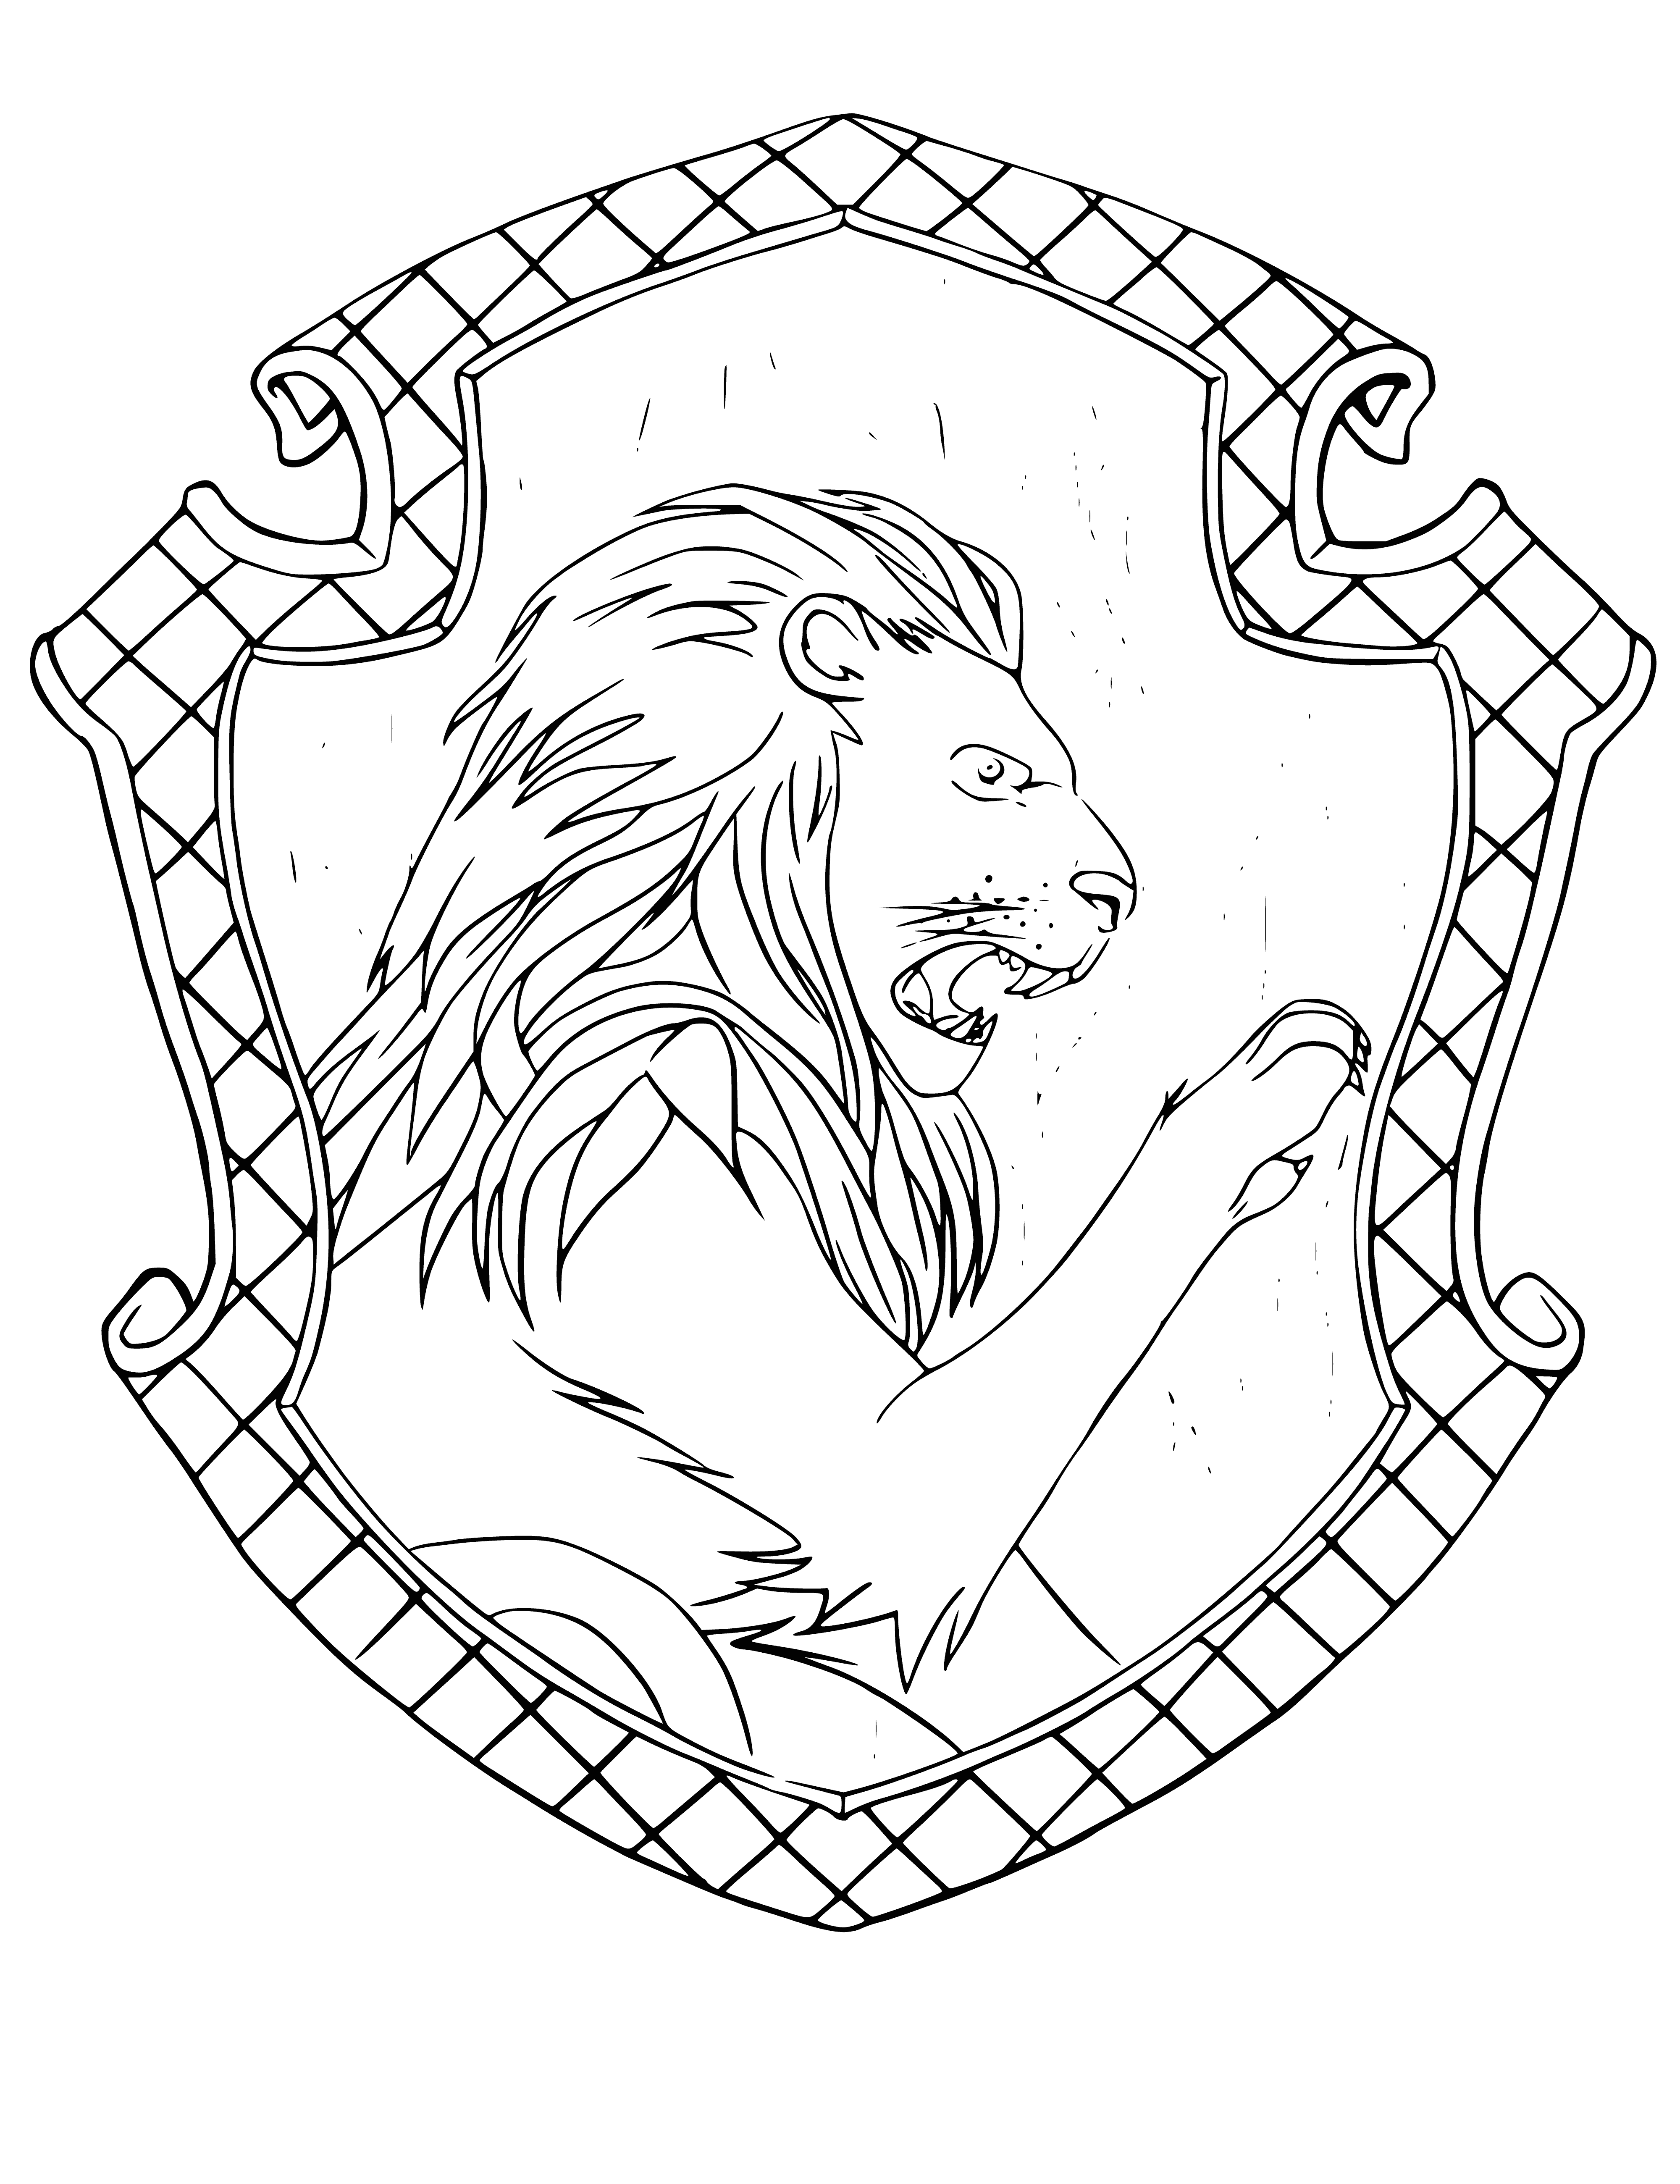 Emblème de la maison Gryffondor coloriage